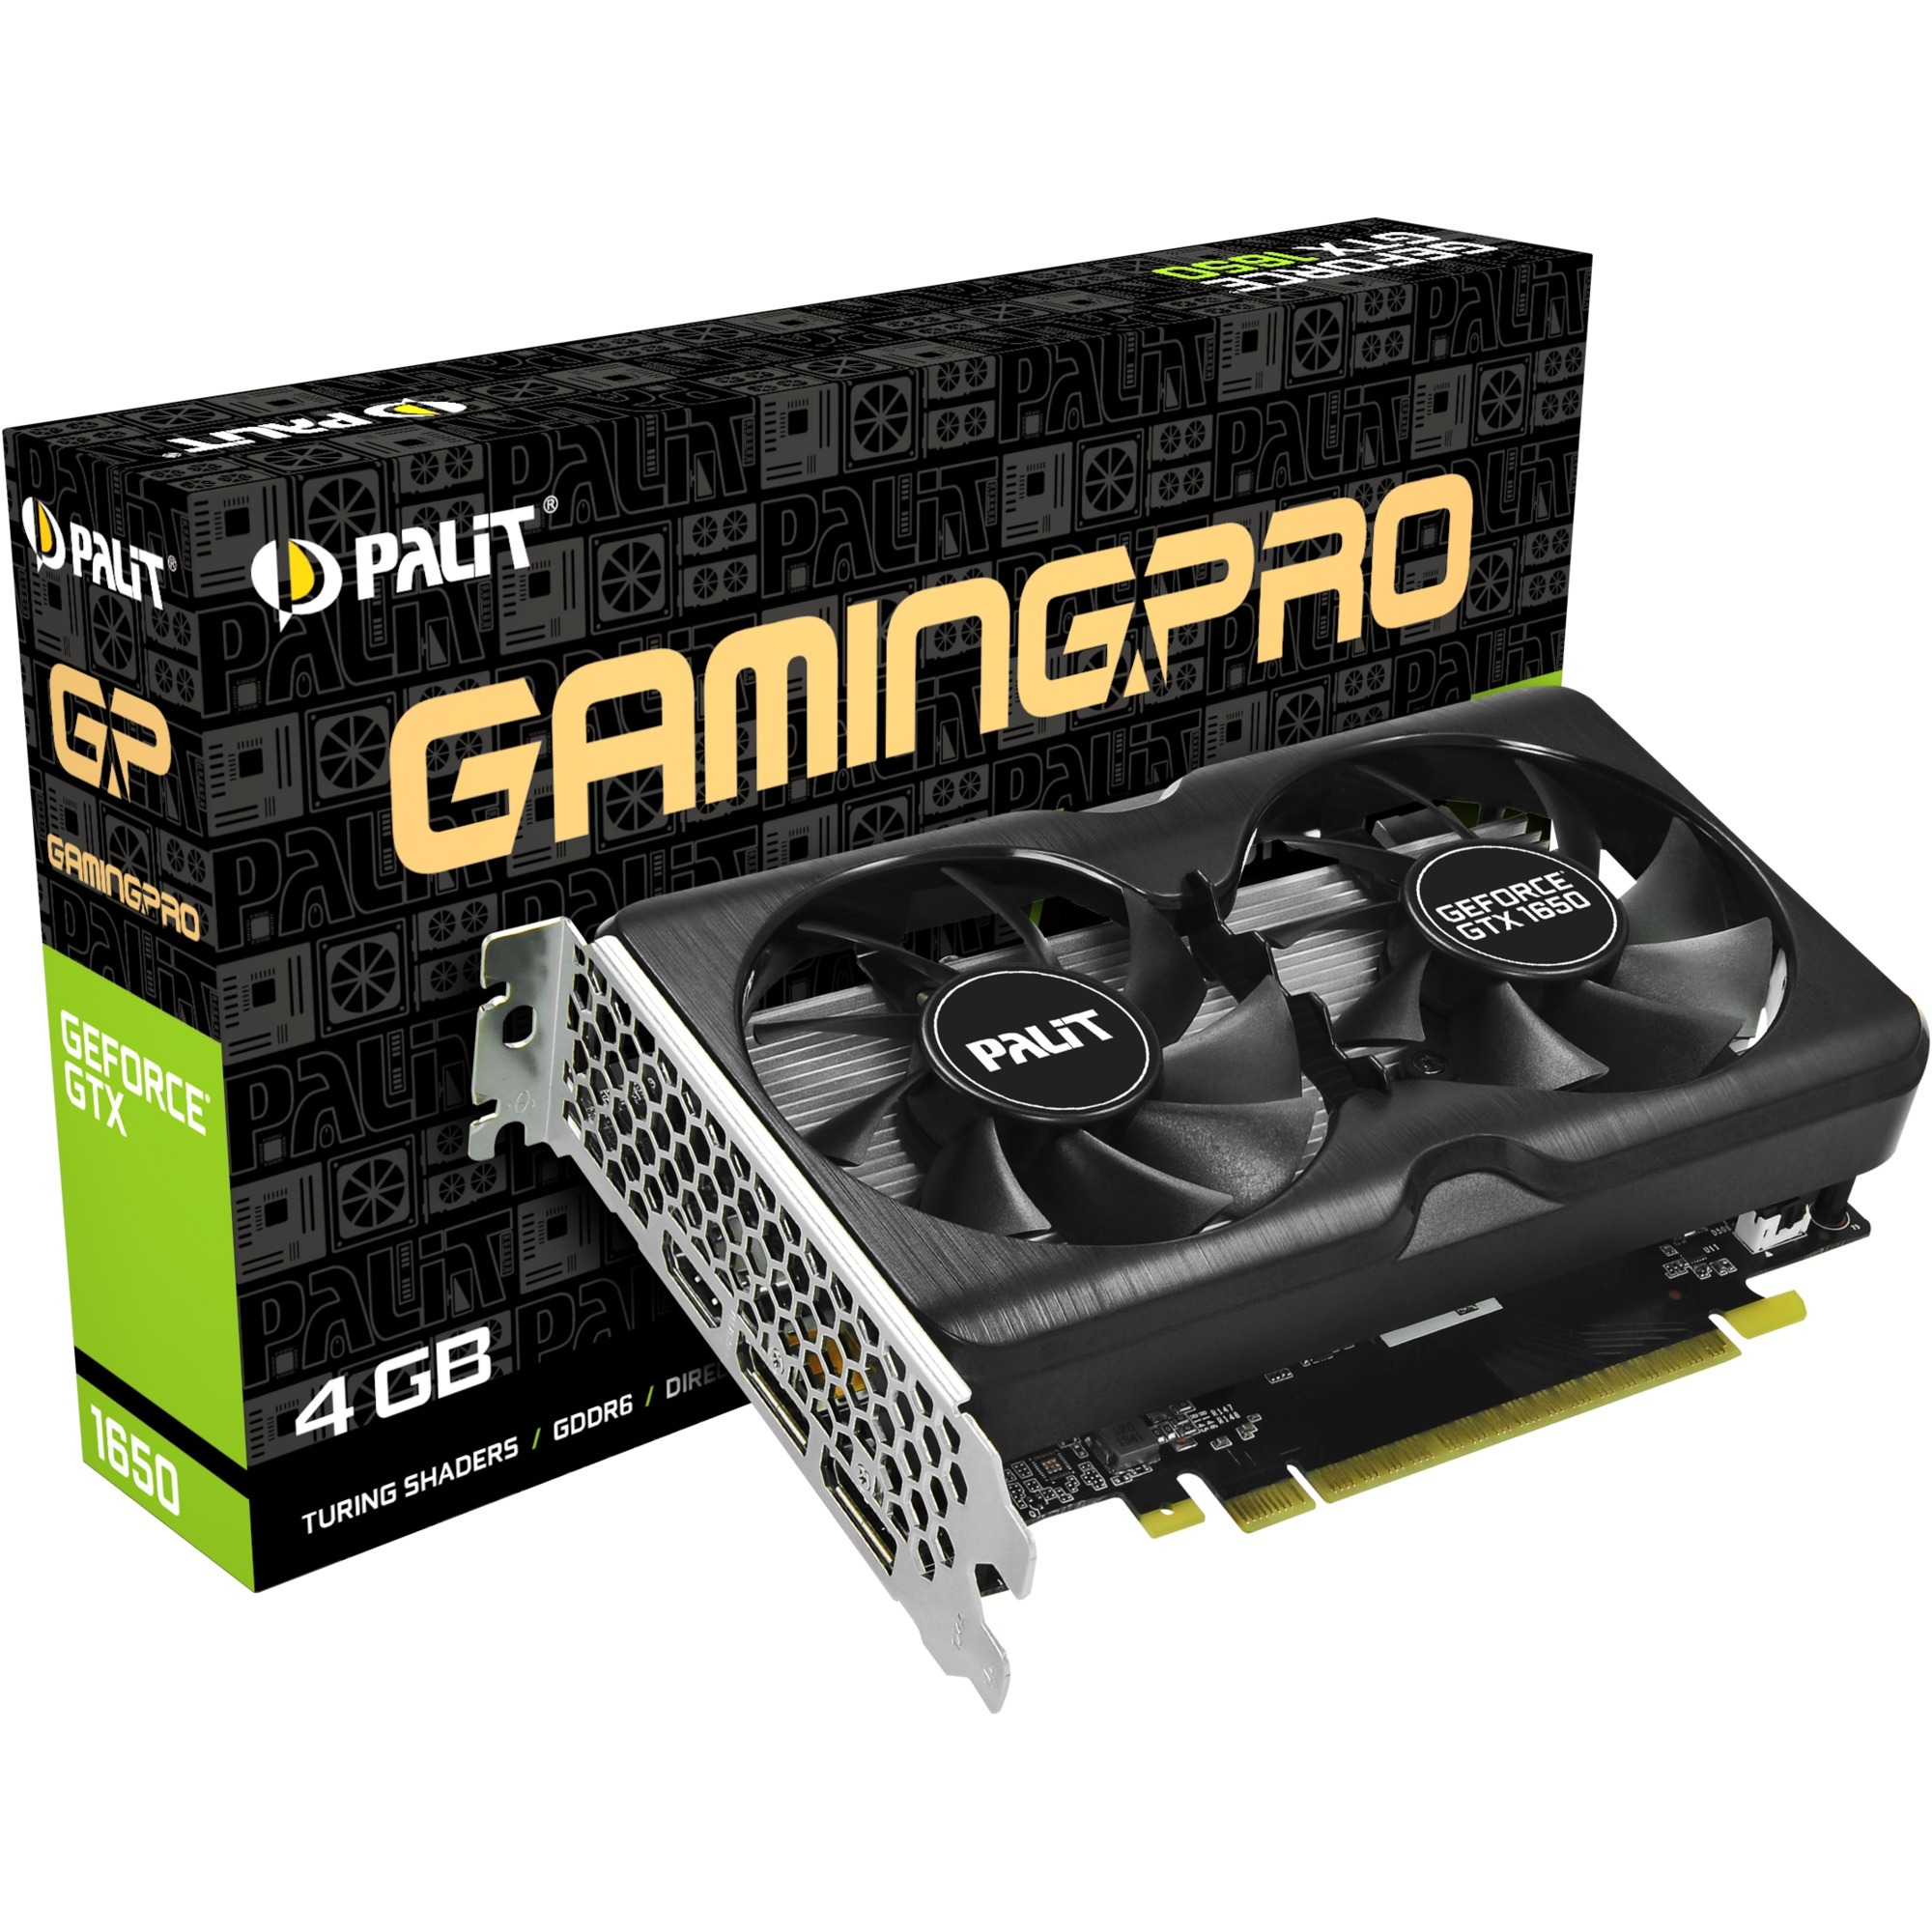 Image of Alternate - GeForce GTX 1650 GamingPro, Grafikkarte online einkaufen bei Alternate